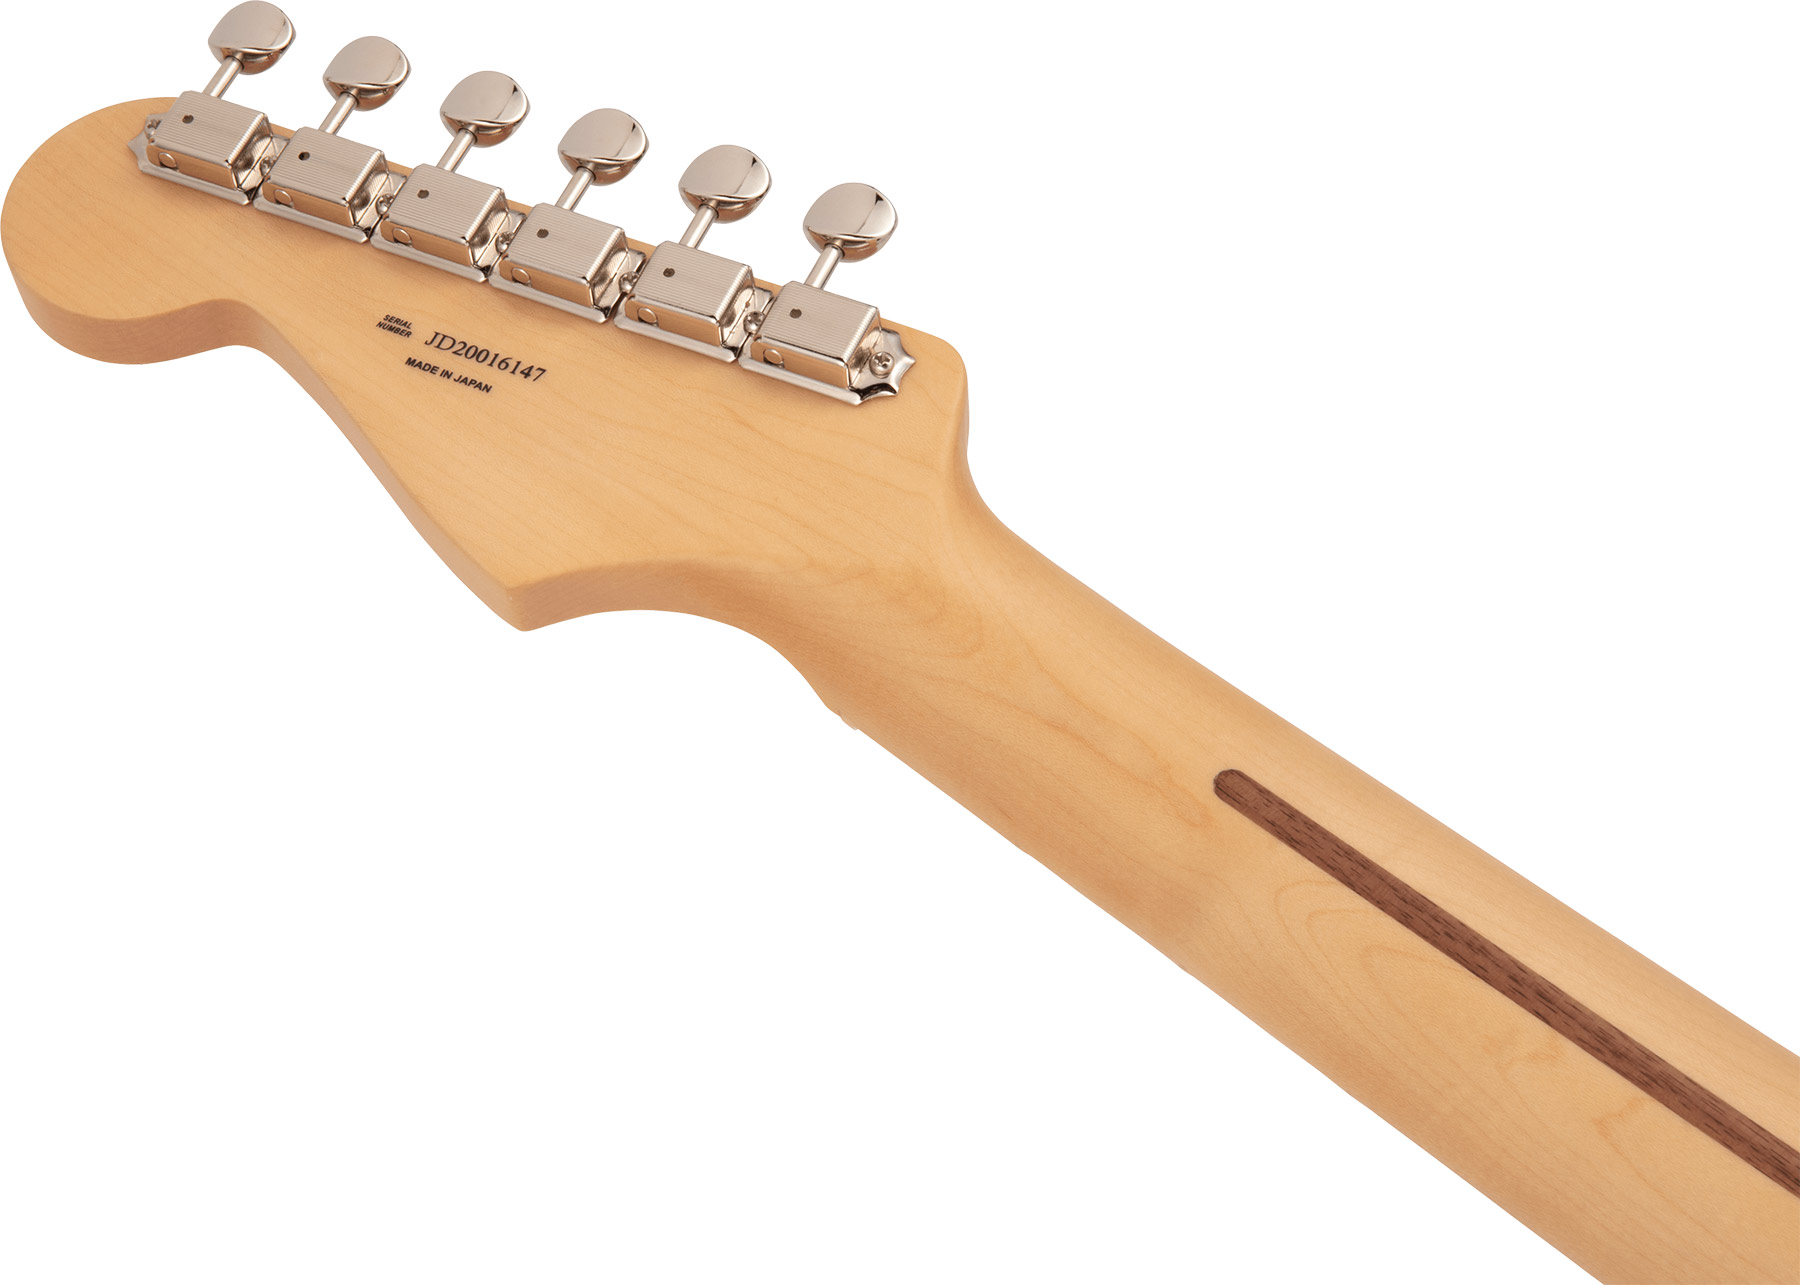 Fender Strat Hybrid Ii Mij Jap 3s Trem Mn - Arctic White - Str shape electric guitar - Variation 3